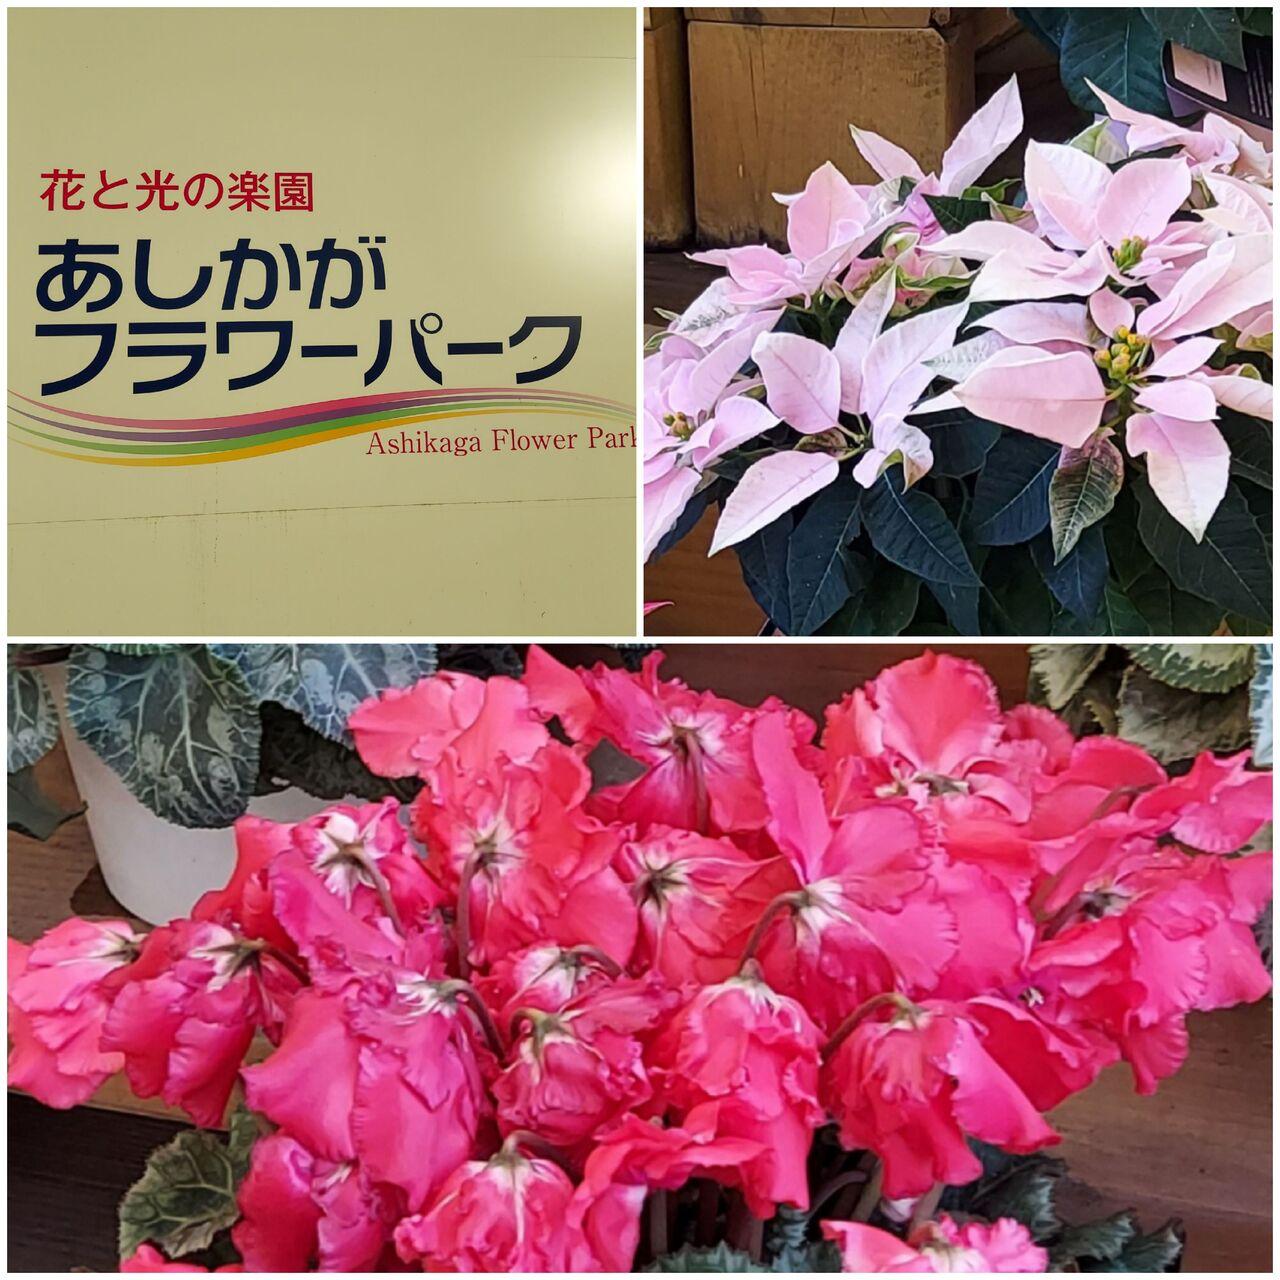 th The Anniversary 光の花の庭 足利 栃木県 の旅行記 ブログ By Nomo1215さん フォートラベル